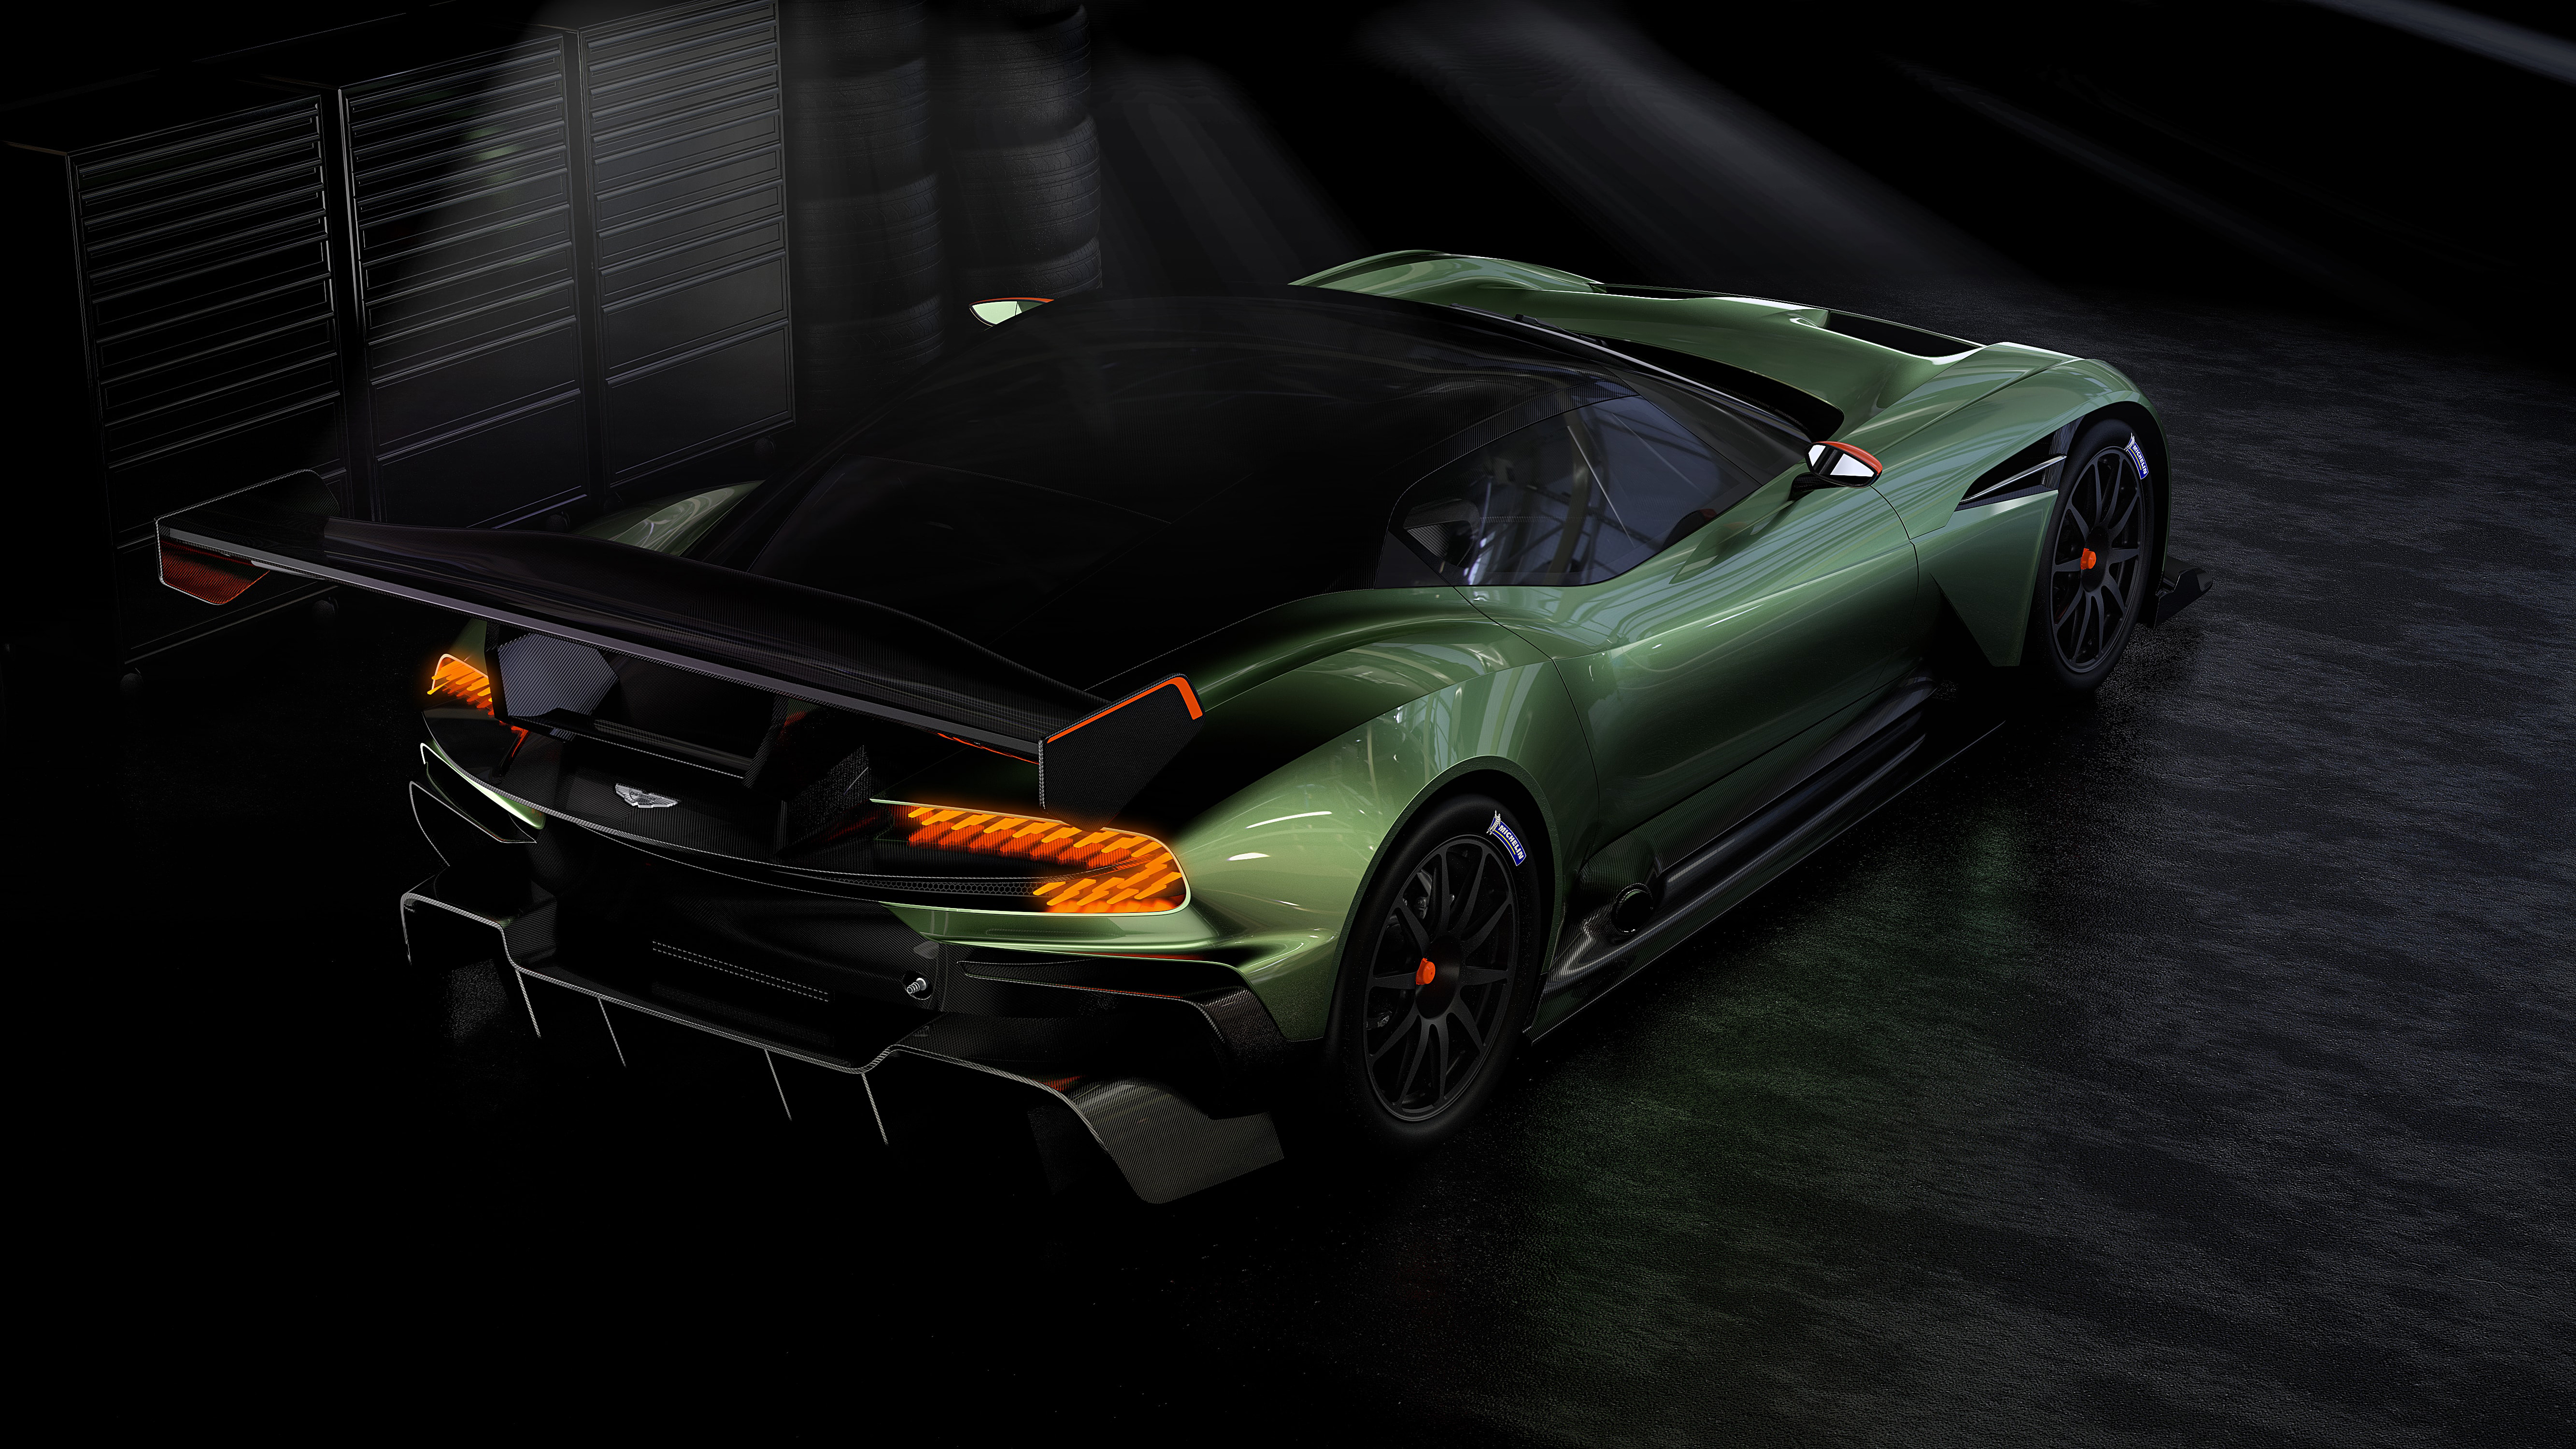 Descarga gratuita de fondo de pantalla para móvil de Aston Martin, Coche De Carreras, Vehículos, Hipercoche, Coche Verde, Aston Martin Vulcano.